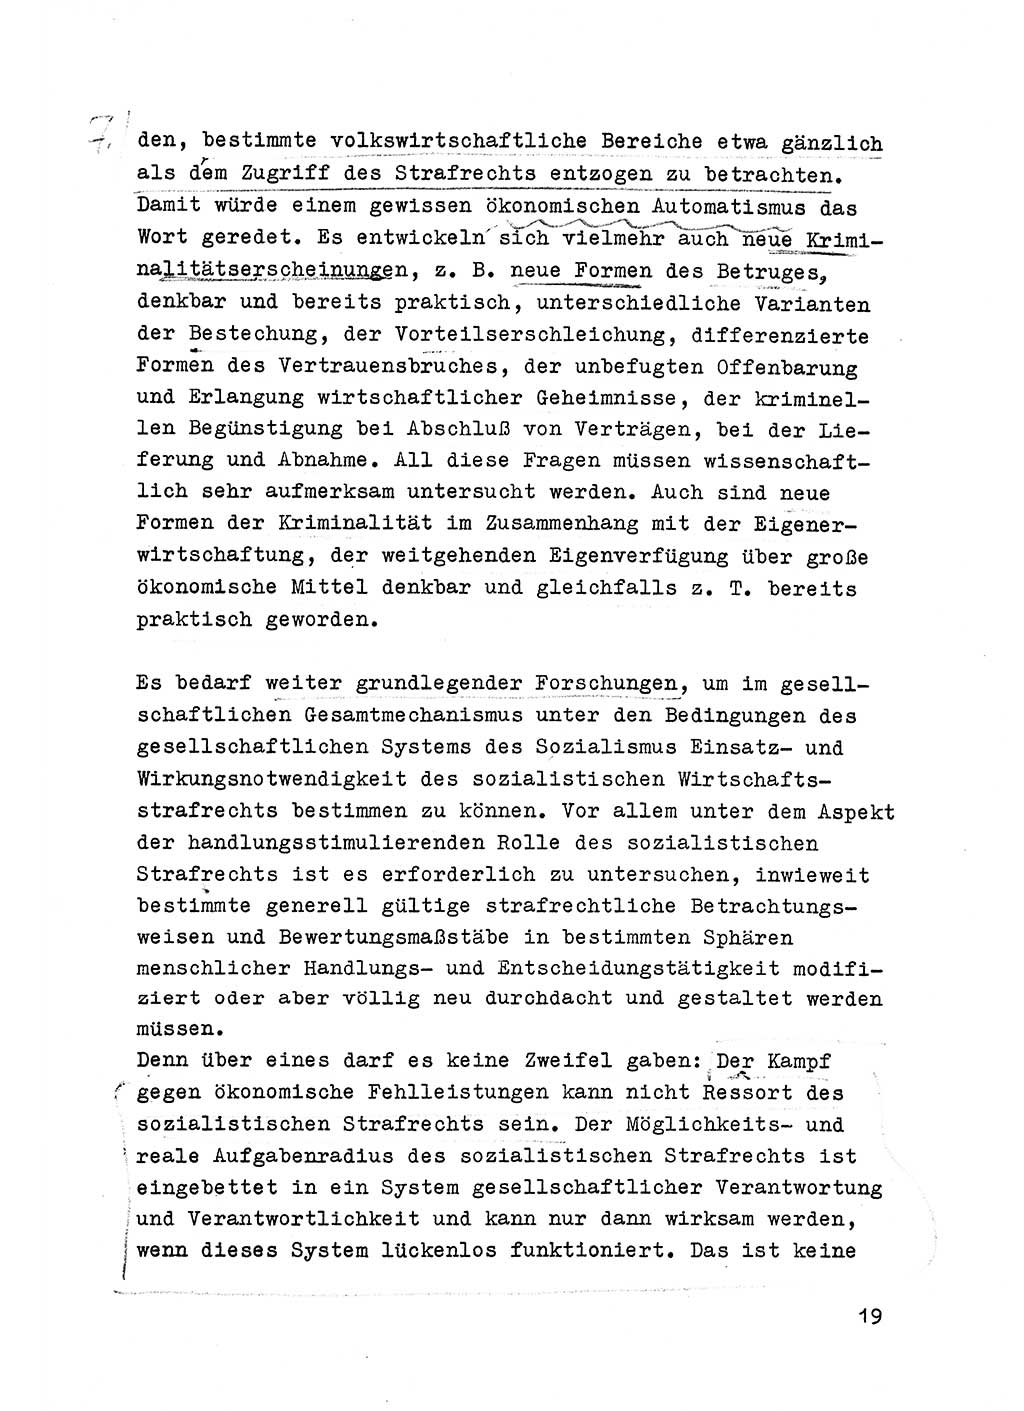 Strafrecht der DDR (Deutsche Demokratische Republik), Besonderer Teil, Lehrmaterial, Heft 6 1970, Seite 19 (Strafr. DDR BT Lehrmat. H. 6 1970, S. 19)